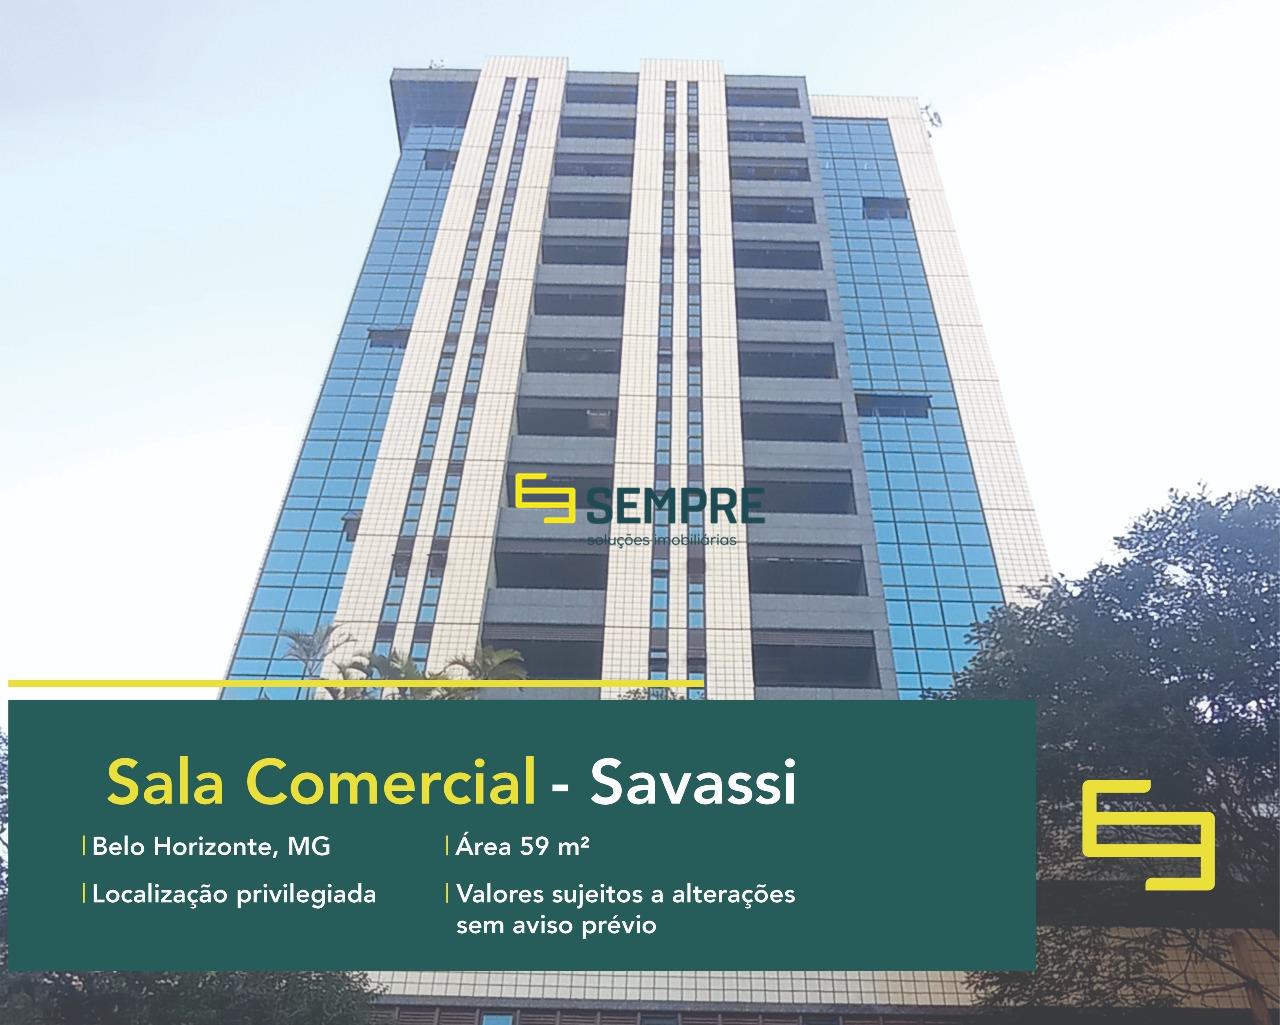 Sala comercial para vender na Savassi em Belo Horizonte, excelente localização. O ponto comercial conta, sobretudo, com área de 59 m².